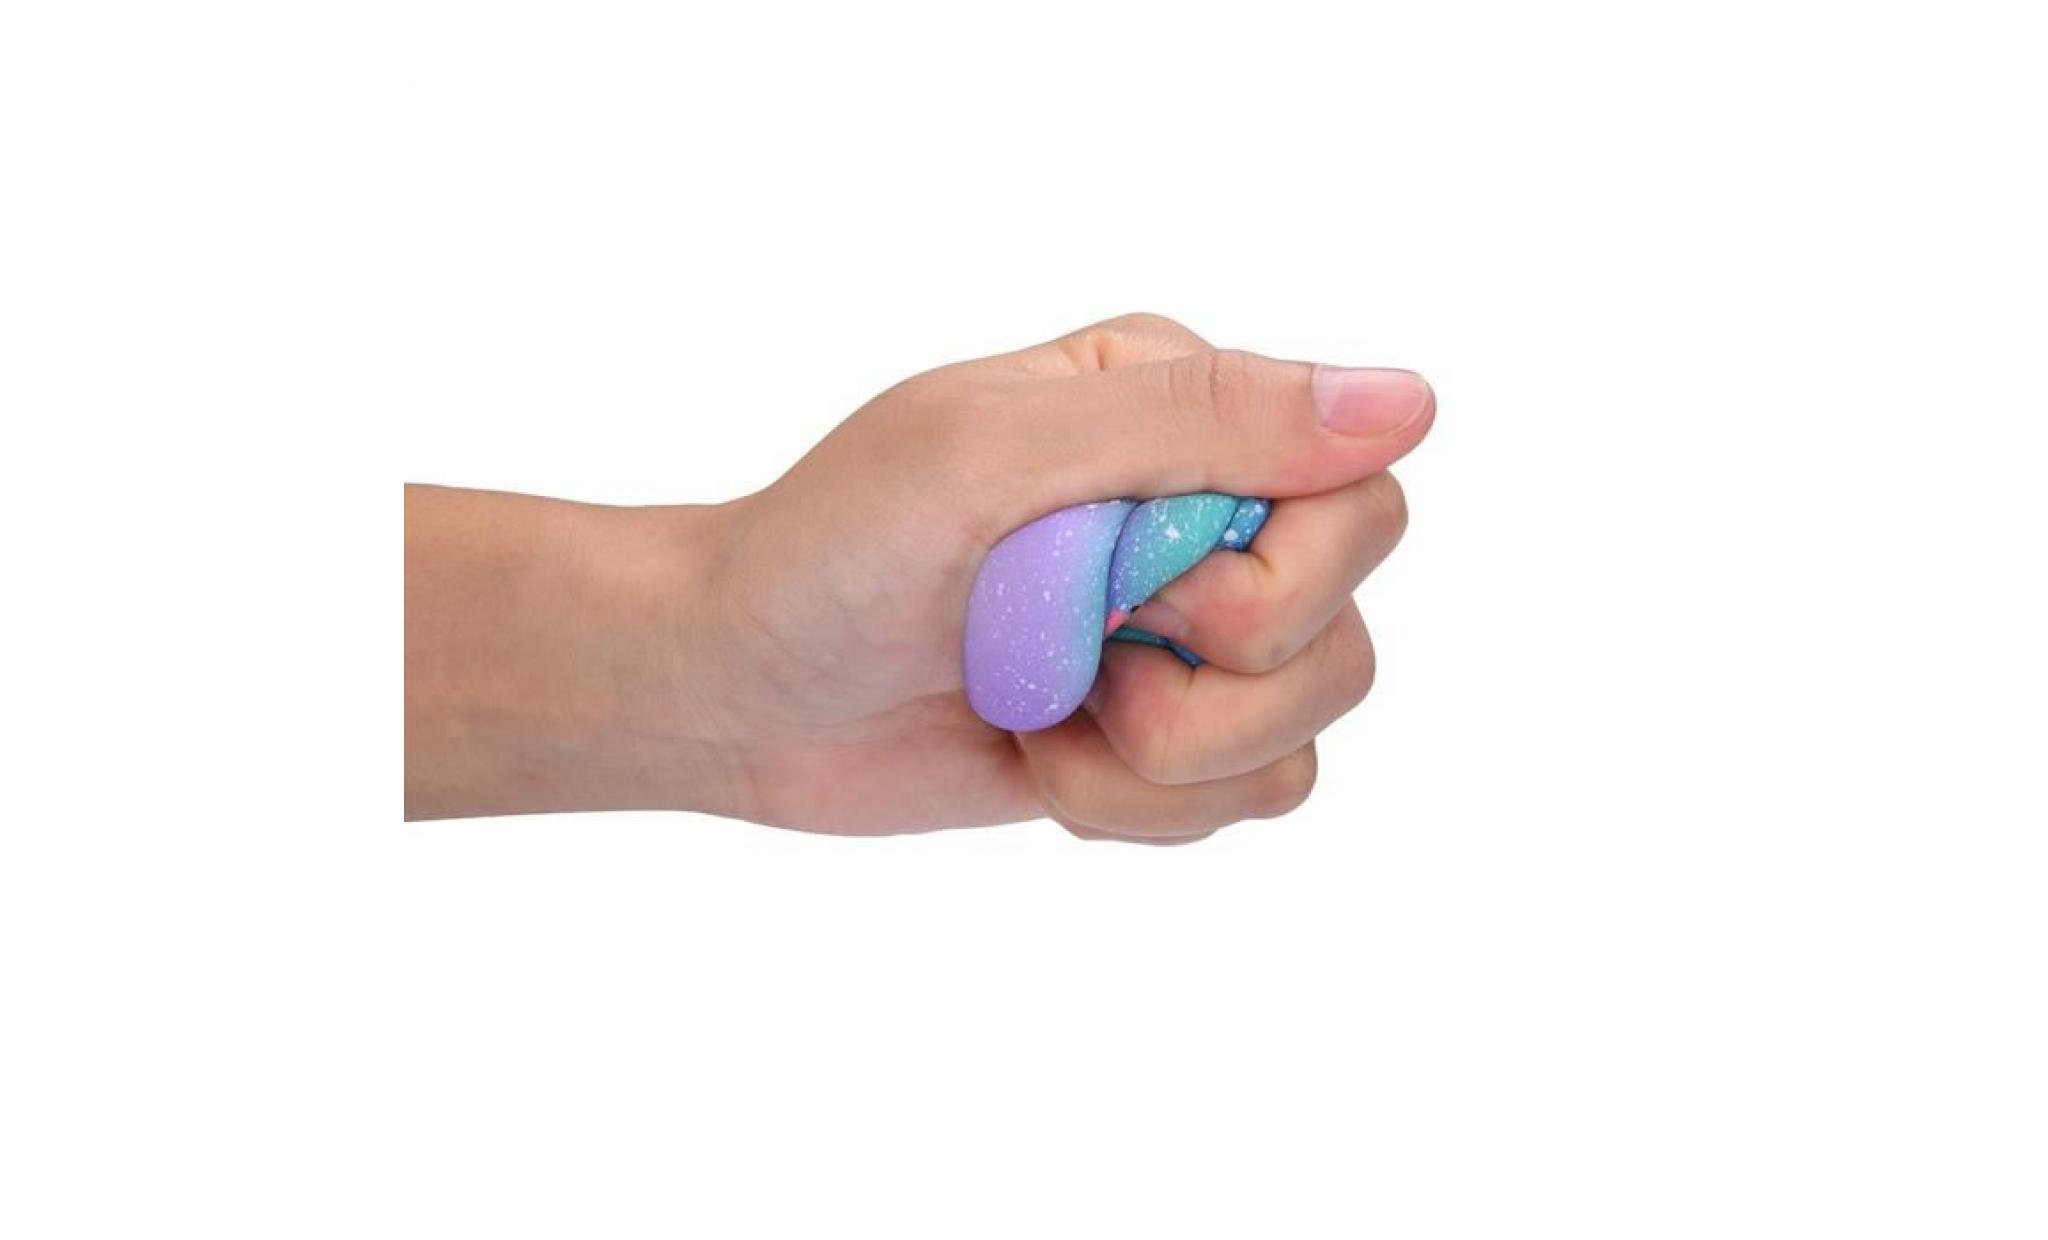 mosakog® galaxy poo odeur agréable squishies jouets squeeze lente hausse du stress toys releveur multicolore_5657 pas cher